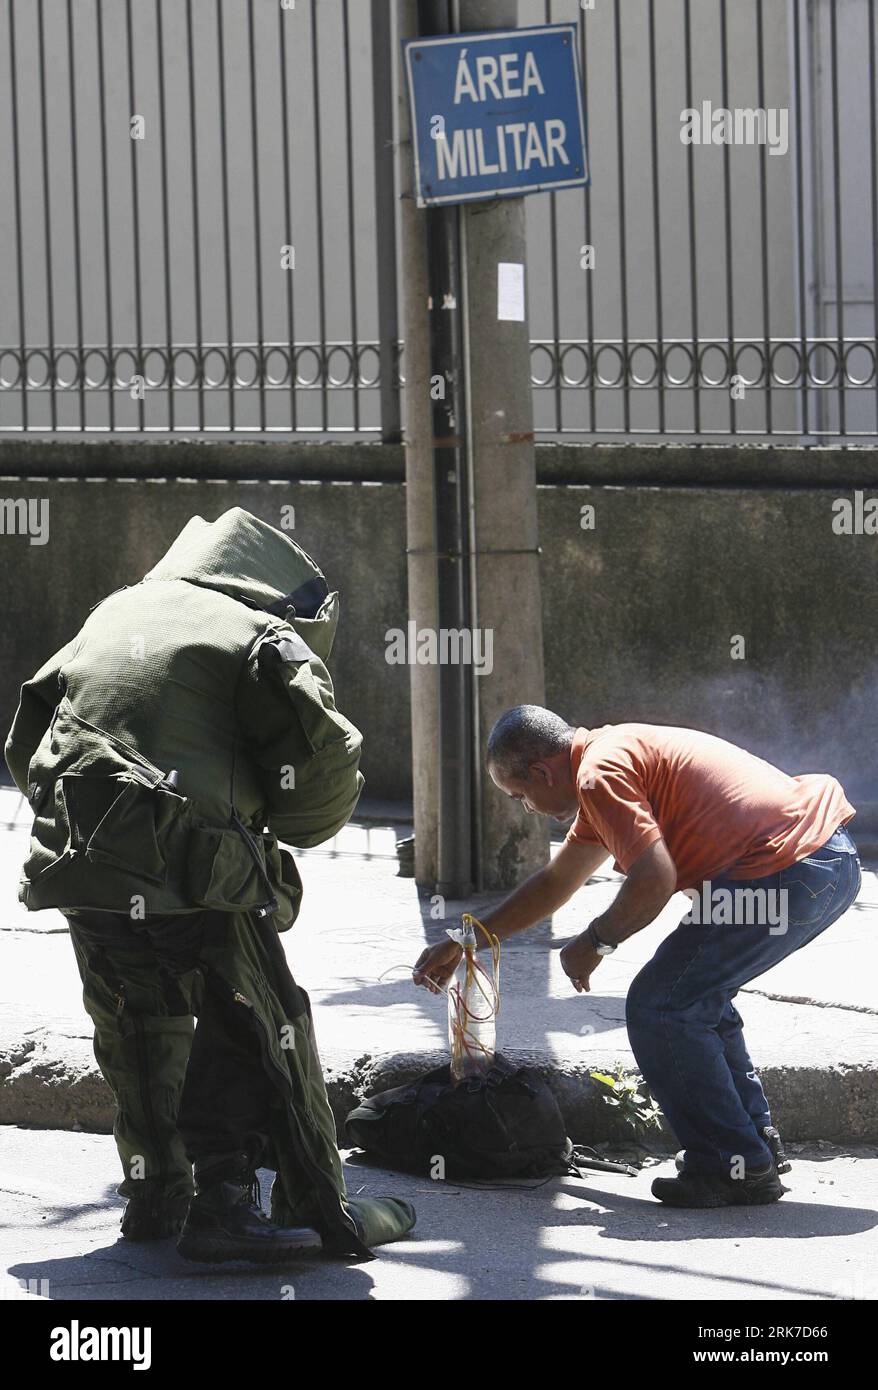 Bildnummer: 53901371 Datum: 29.03.2010 Copyright: imago/Xinhua (100329) -- RIO DE JANEIRO, 29. März 2010 (Xinhua) -- Polizei aus dem Bombenkommando arbeitet neben einem Fumy-Beutel, der vermutlich eine Bombe enthält, in der Innenstadt von Rio de Janeiro, Brasilien, 29. März 2010. Die Polizei öffnete den Rucksack, nur um wertlosen Müll zu finden. (Xinhua/Agencia Estado) (BRASILIEN RAUS) (gxr) (3)BRASILIEN-RIO DE JANEIRO-SUSPCIOUS BAG PUBLICATIONxNOTxINxCHN Brasilien Bombenfund Entschärfung premiumd xint kbdig xsp 2010 hoch o0 Bombe o00 Schutzanzug, Bombenentschärfung Bildnummer 53901371 Datum 29 03 2010 Copyright Imago XINHUA Rio d Stockfoto